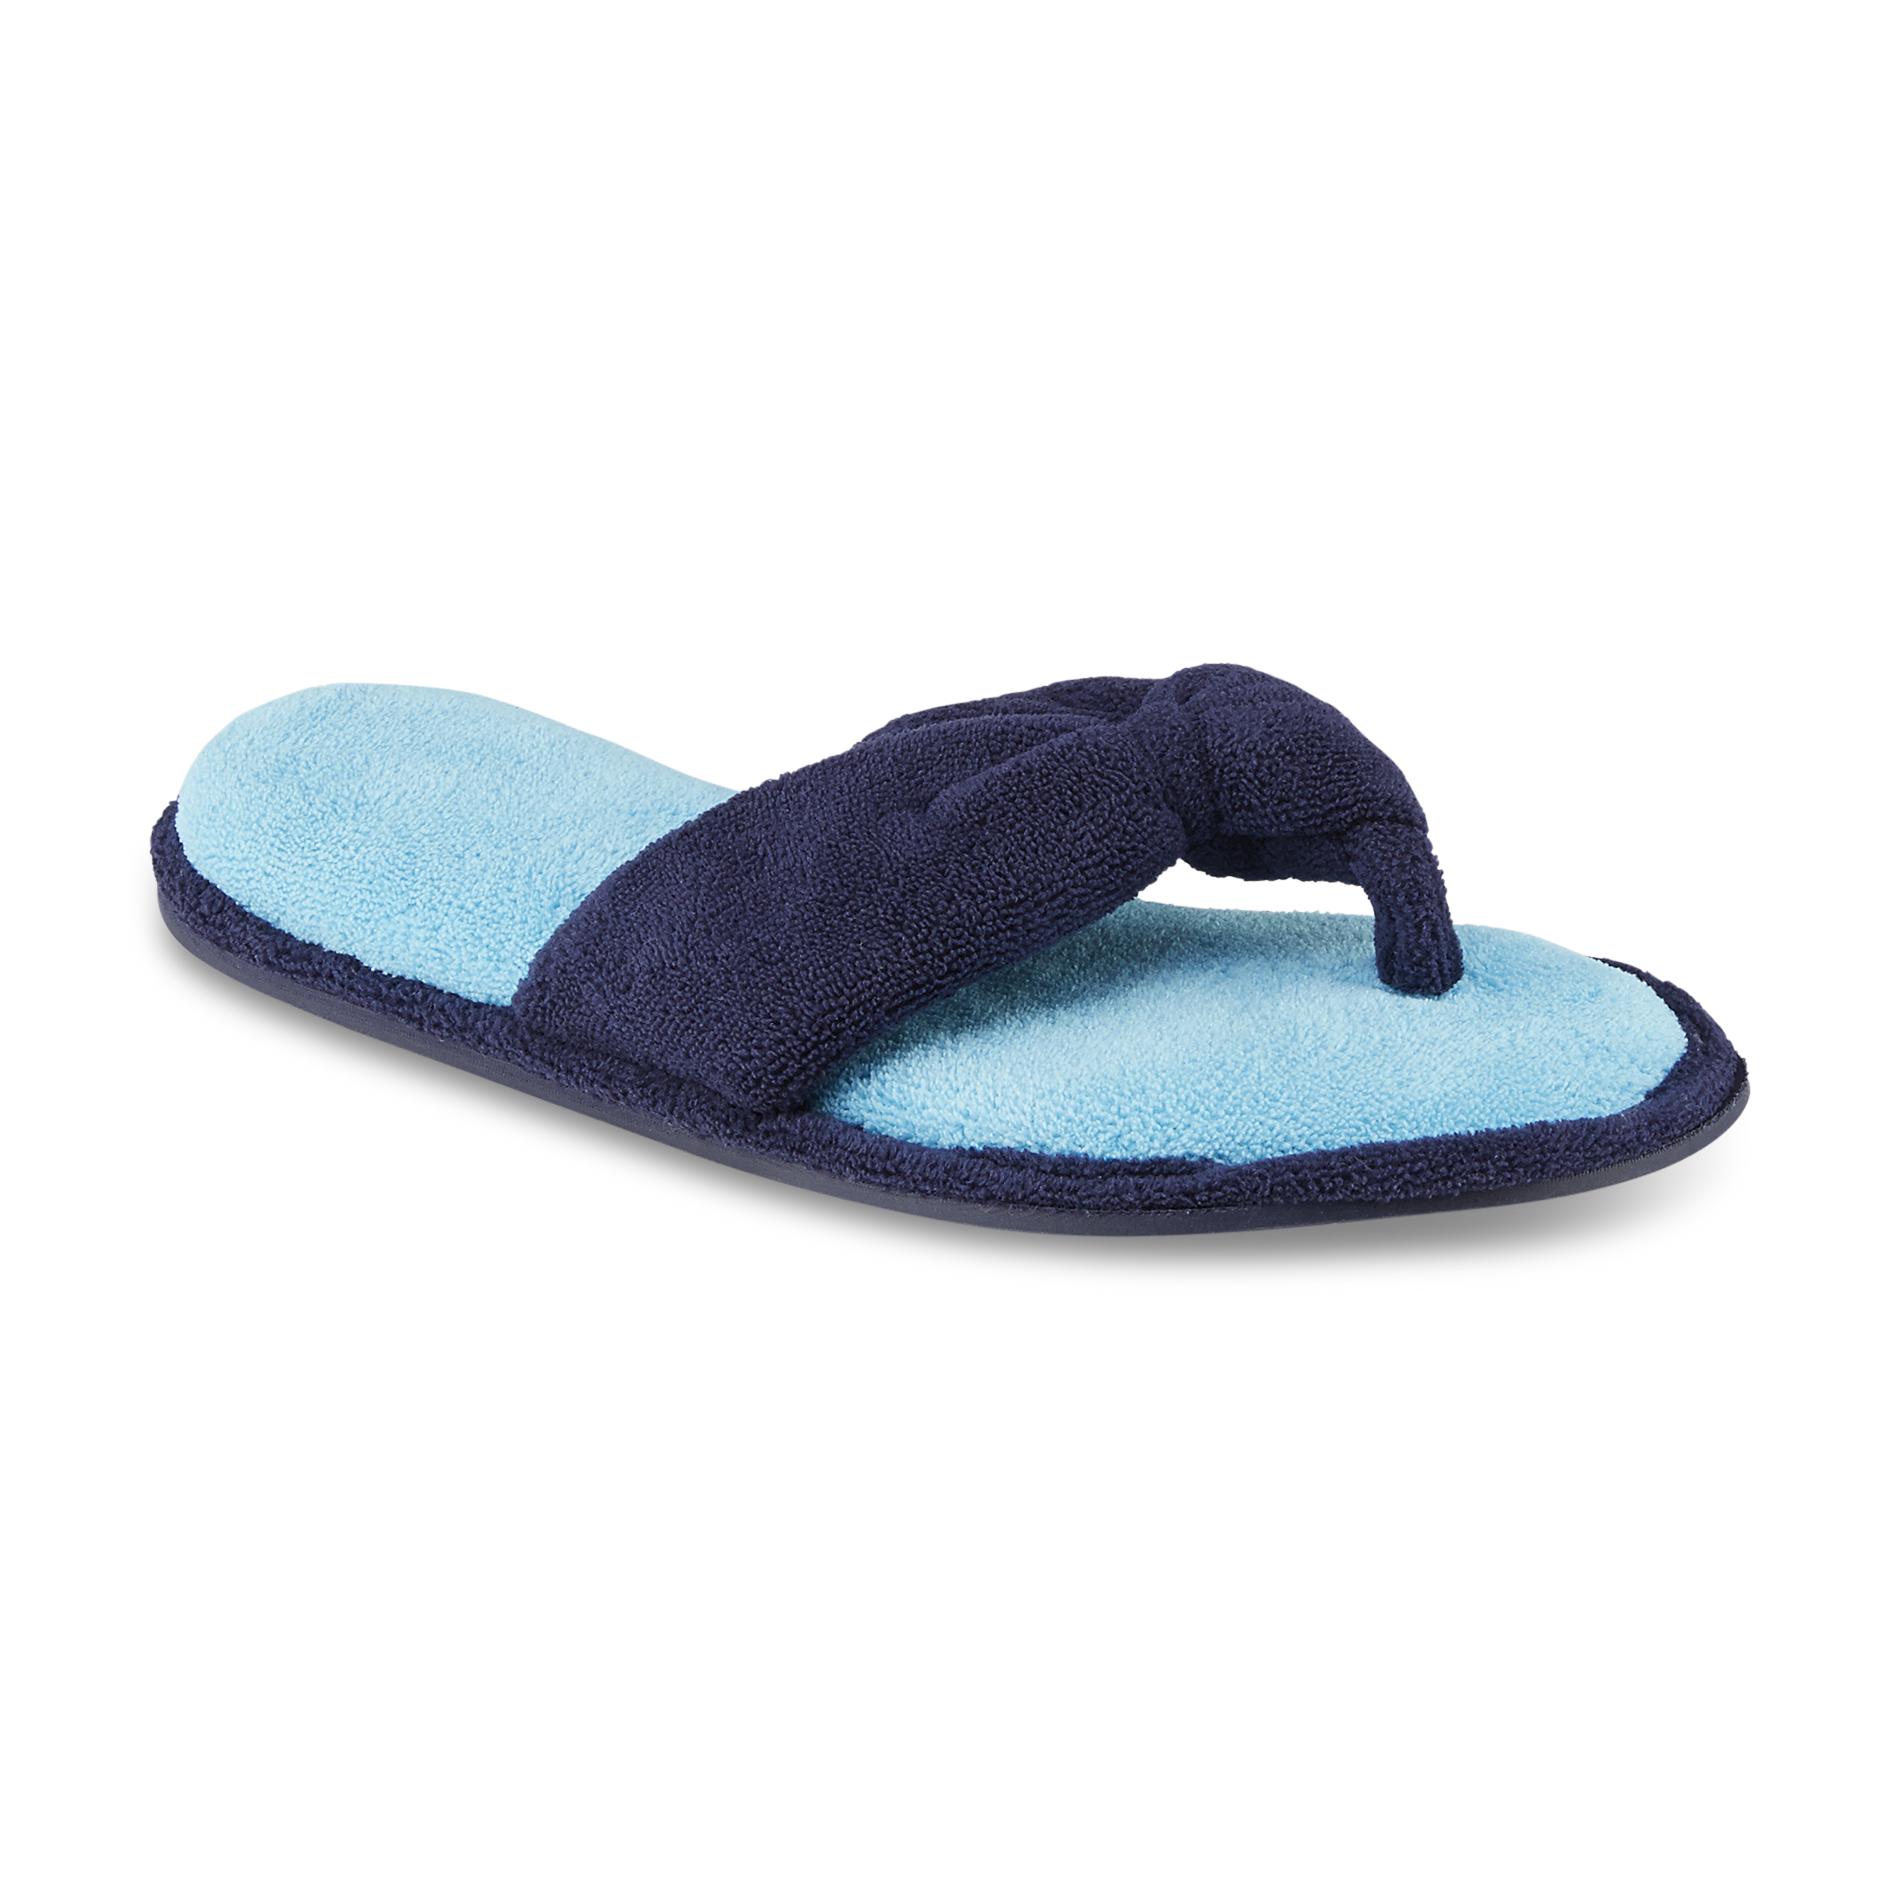 Dearfoams Women's Honna Blue Thong Slipper